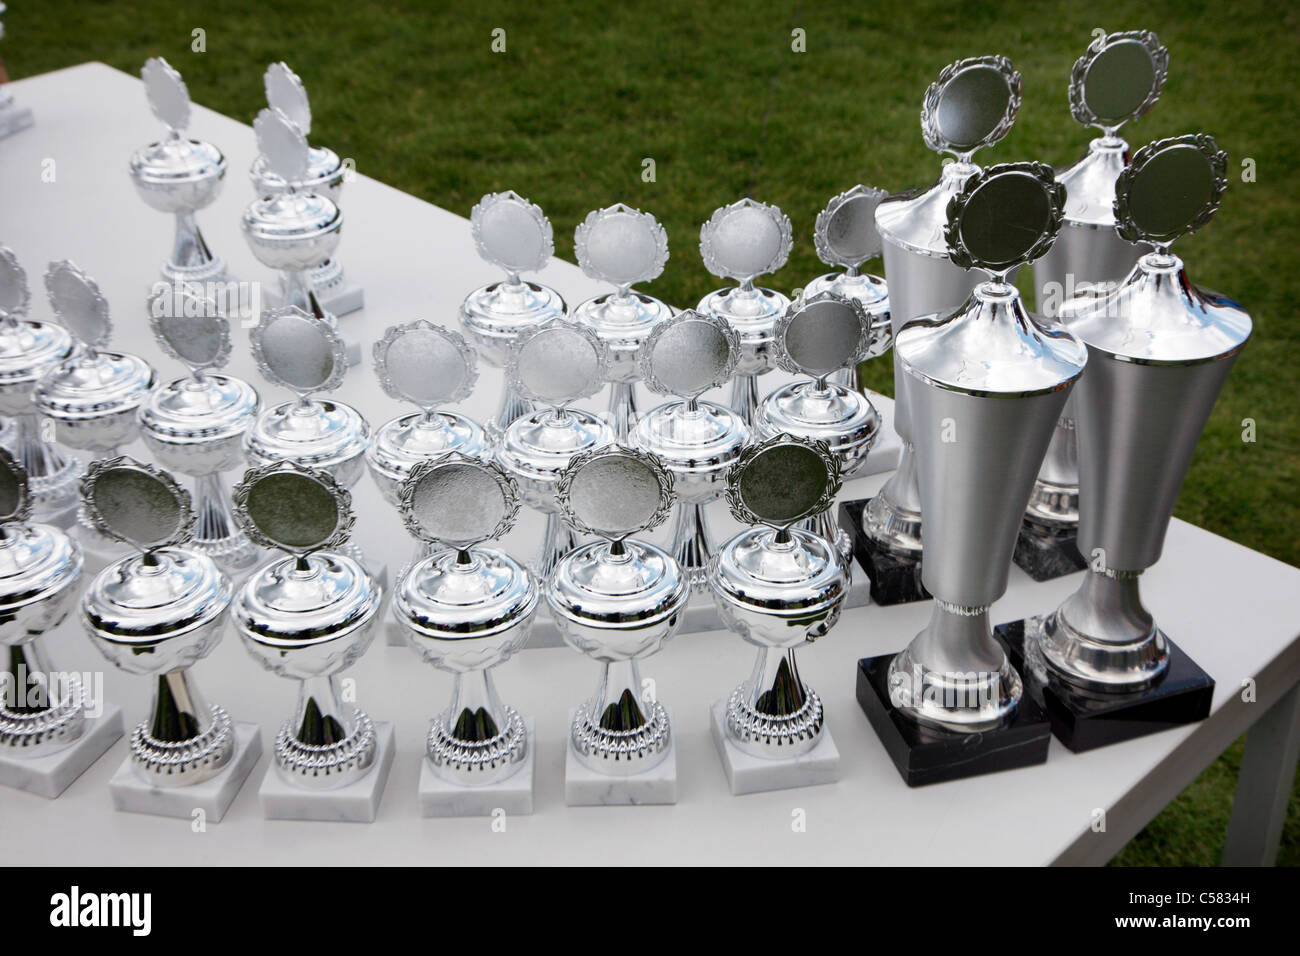 Coppe d'argento in attesa per i vincitori di una competizione sportiva. Foto Stock